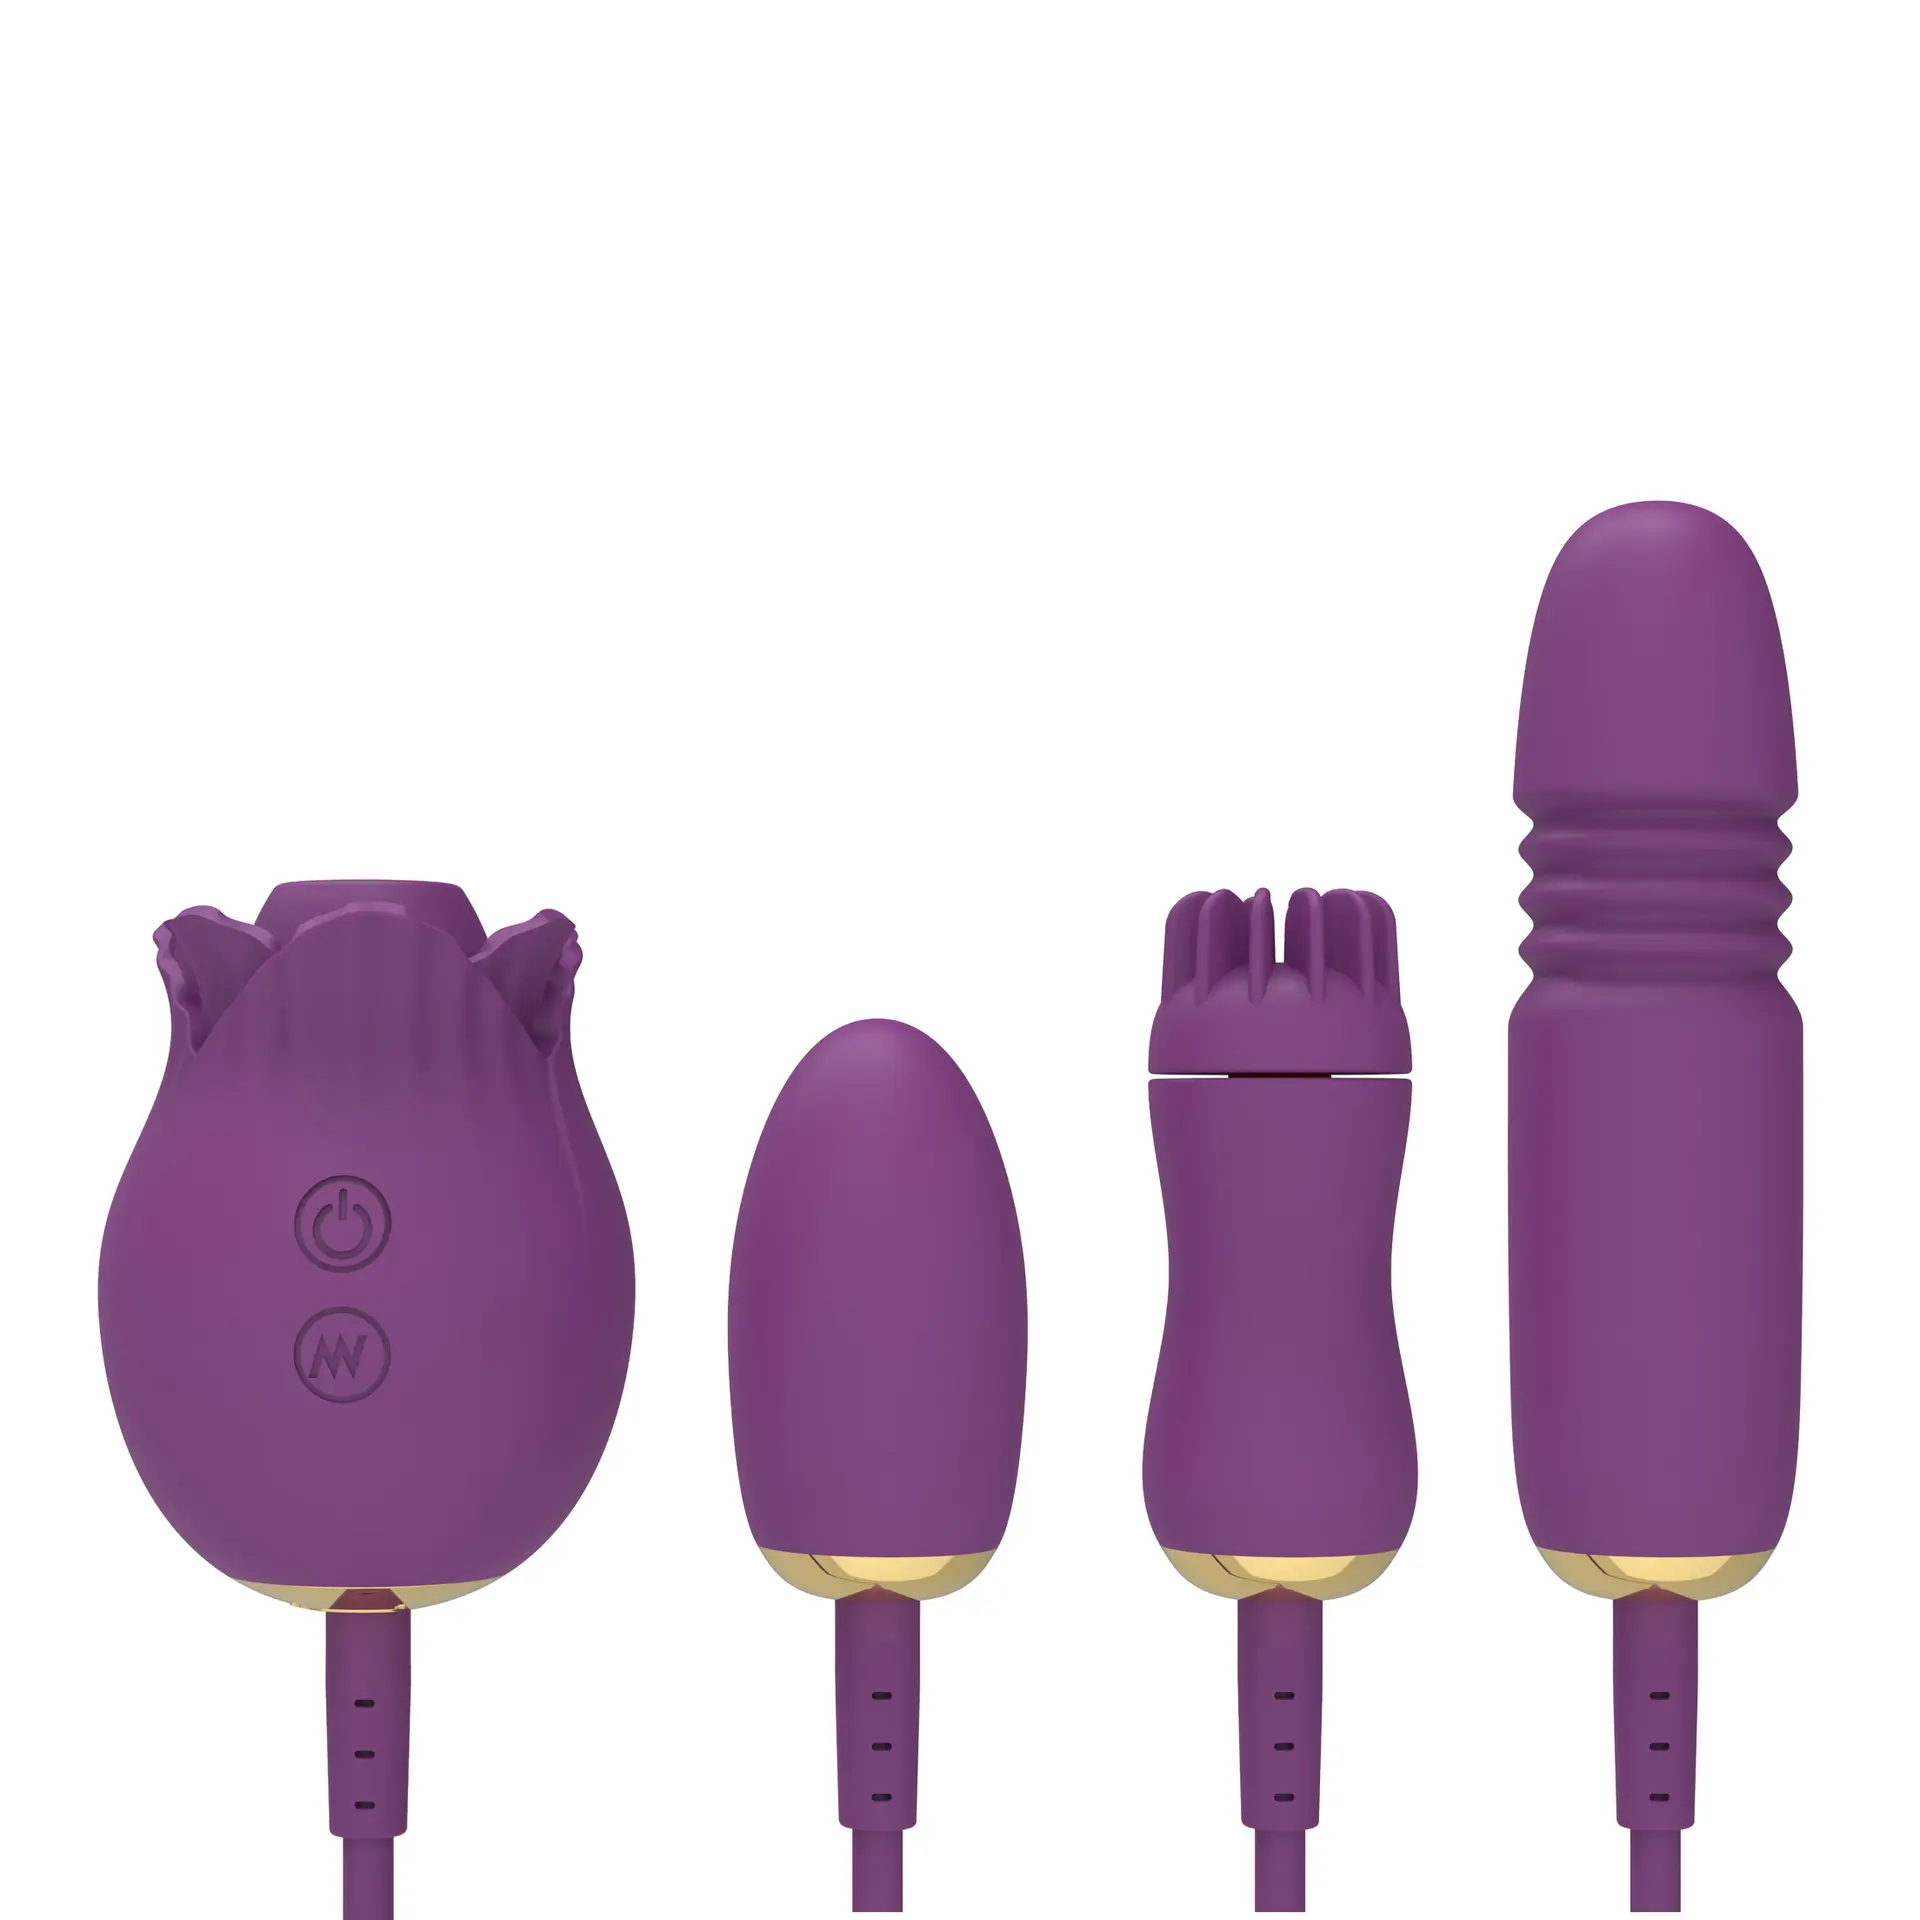 Vibrador de empuje femenino USB para mujer vibrador juguetes sexy para mujeres juguetes sexuales para mujer conjuntos de vibradores